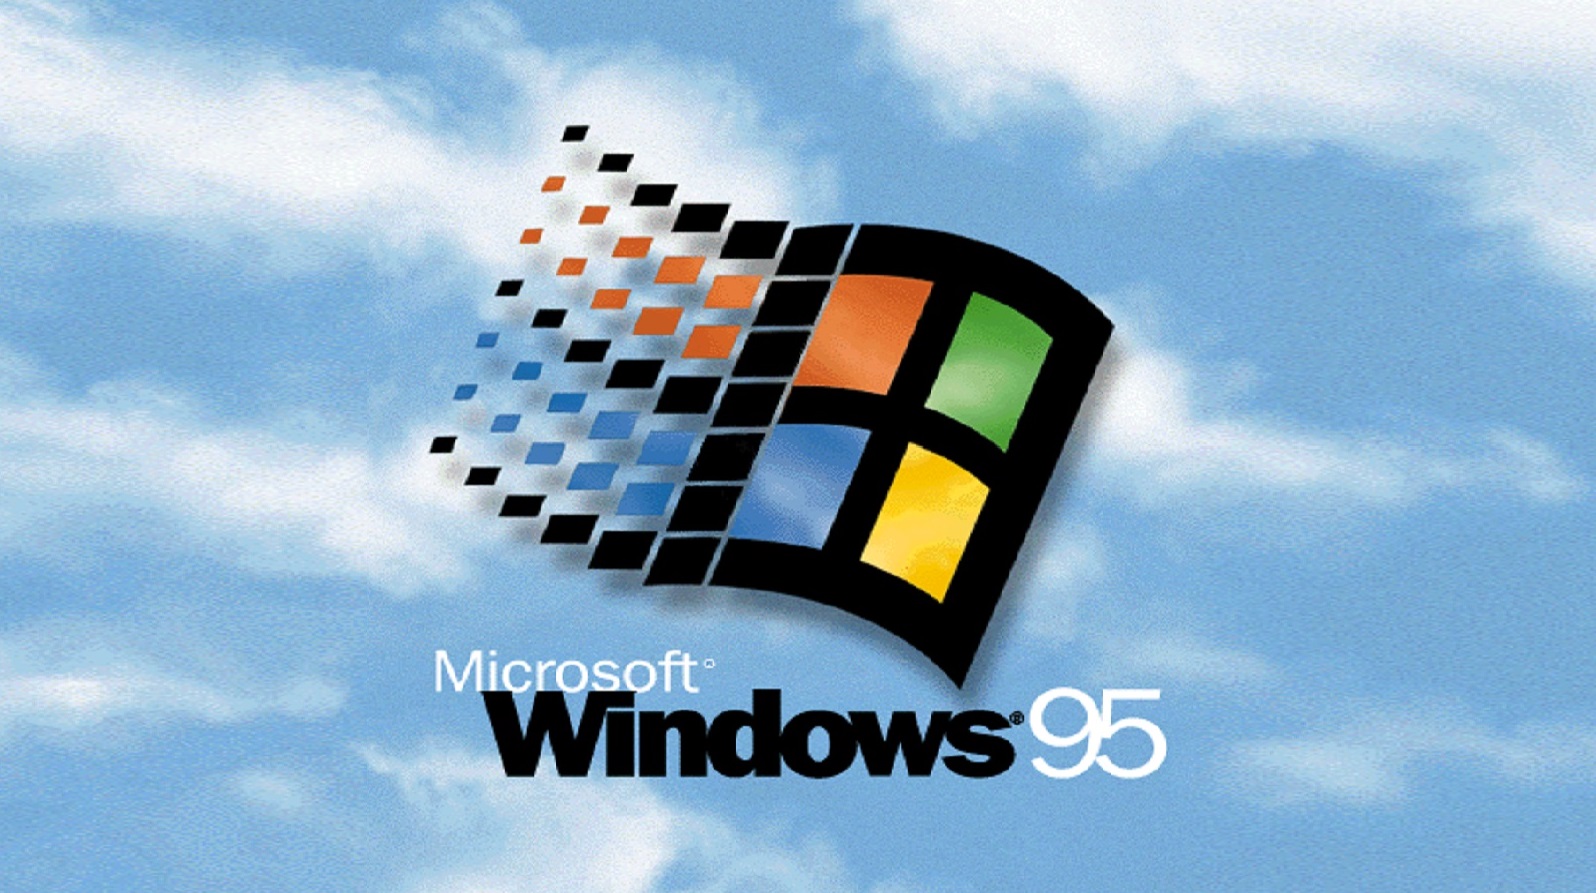 윈도우 95 벽지,하늘,폰트,제도법,과학 기술,루빅스 큐브